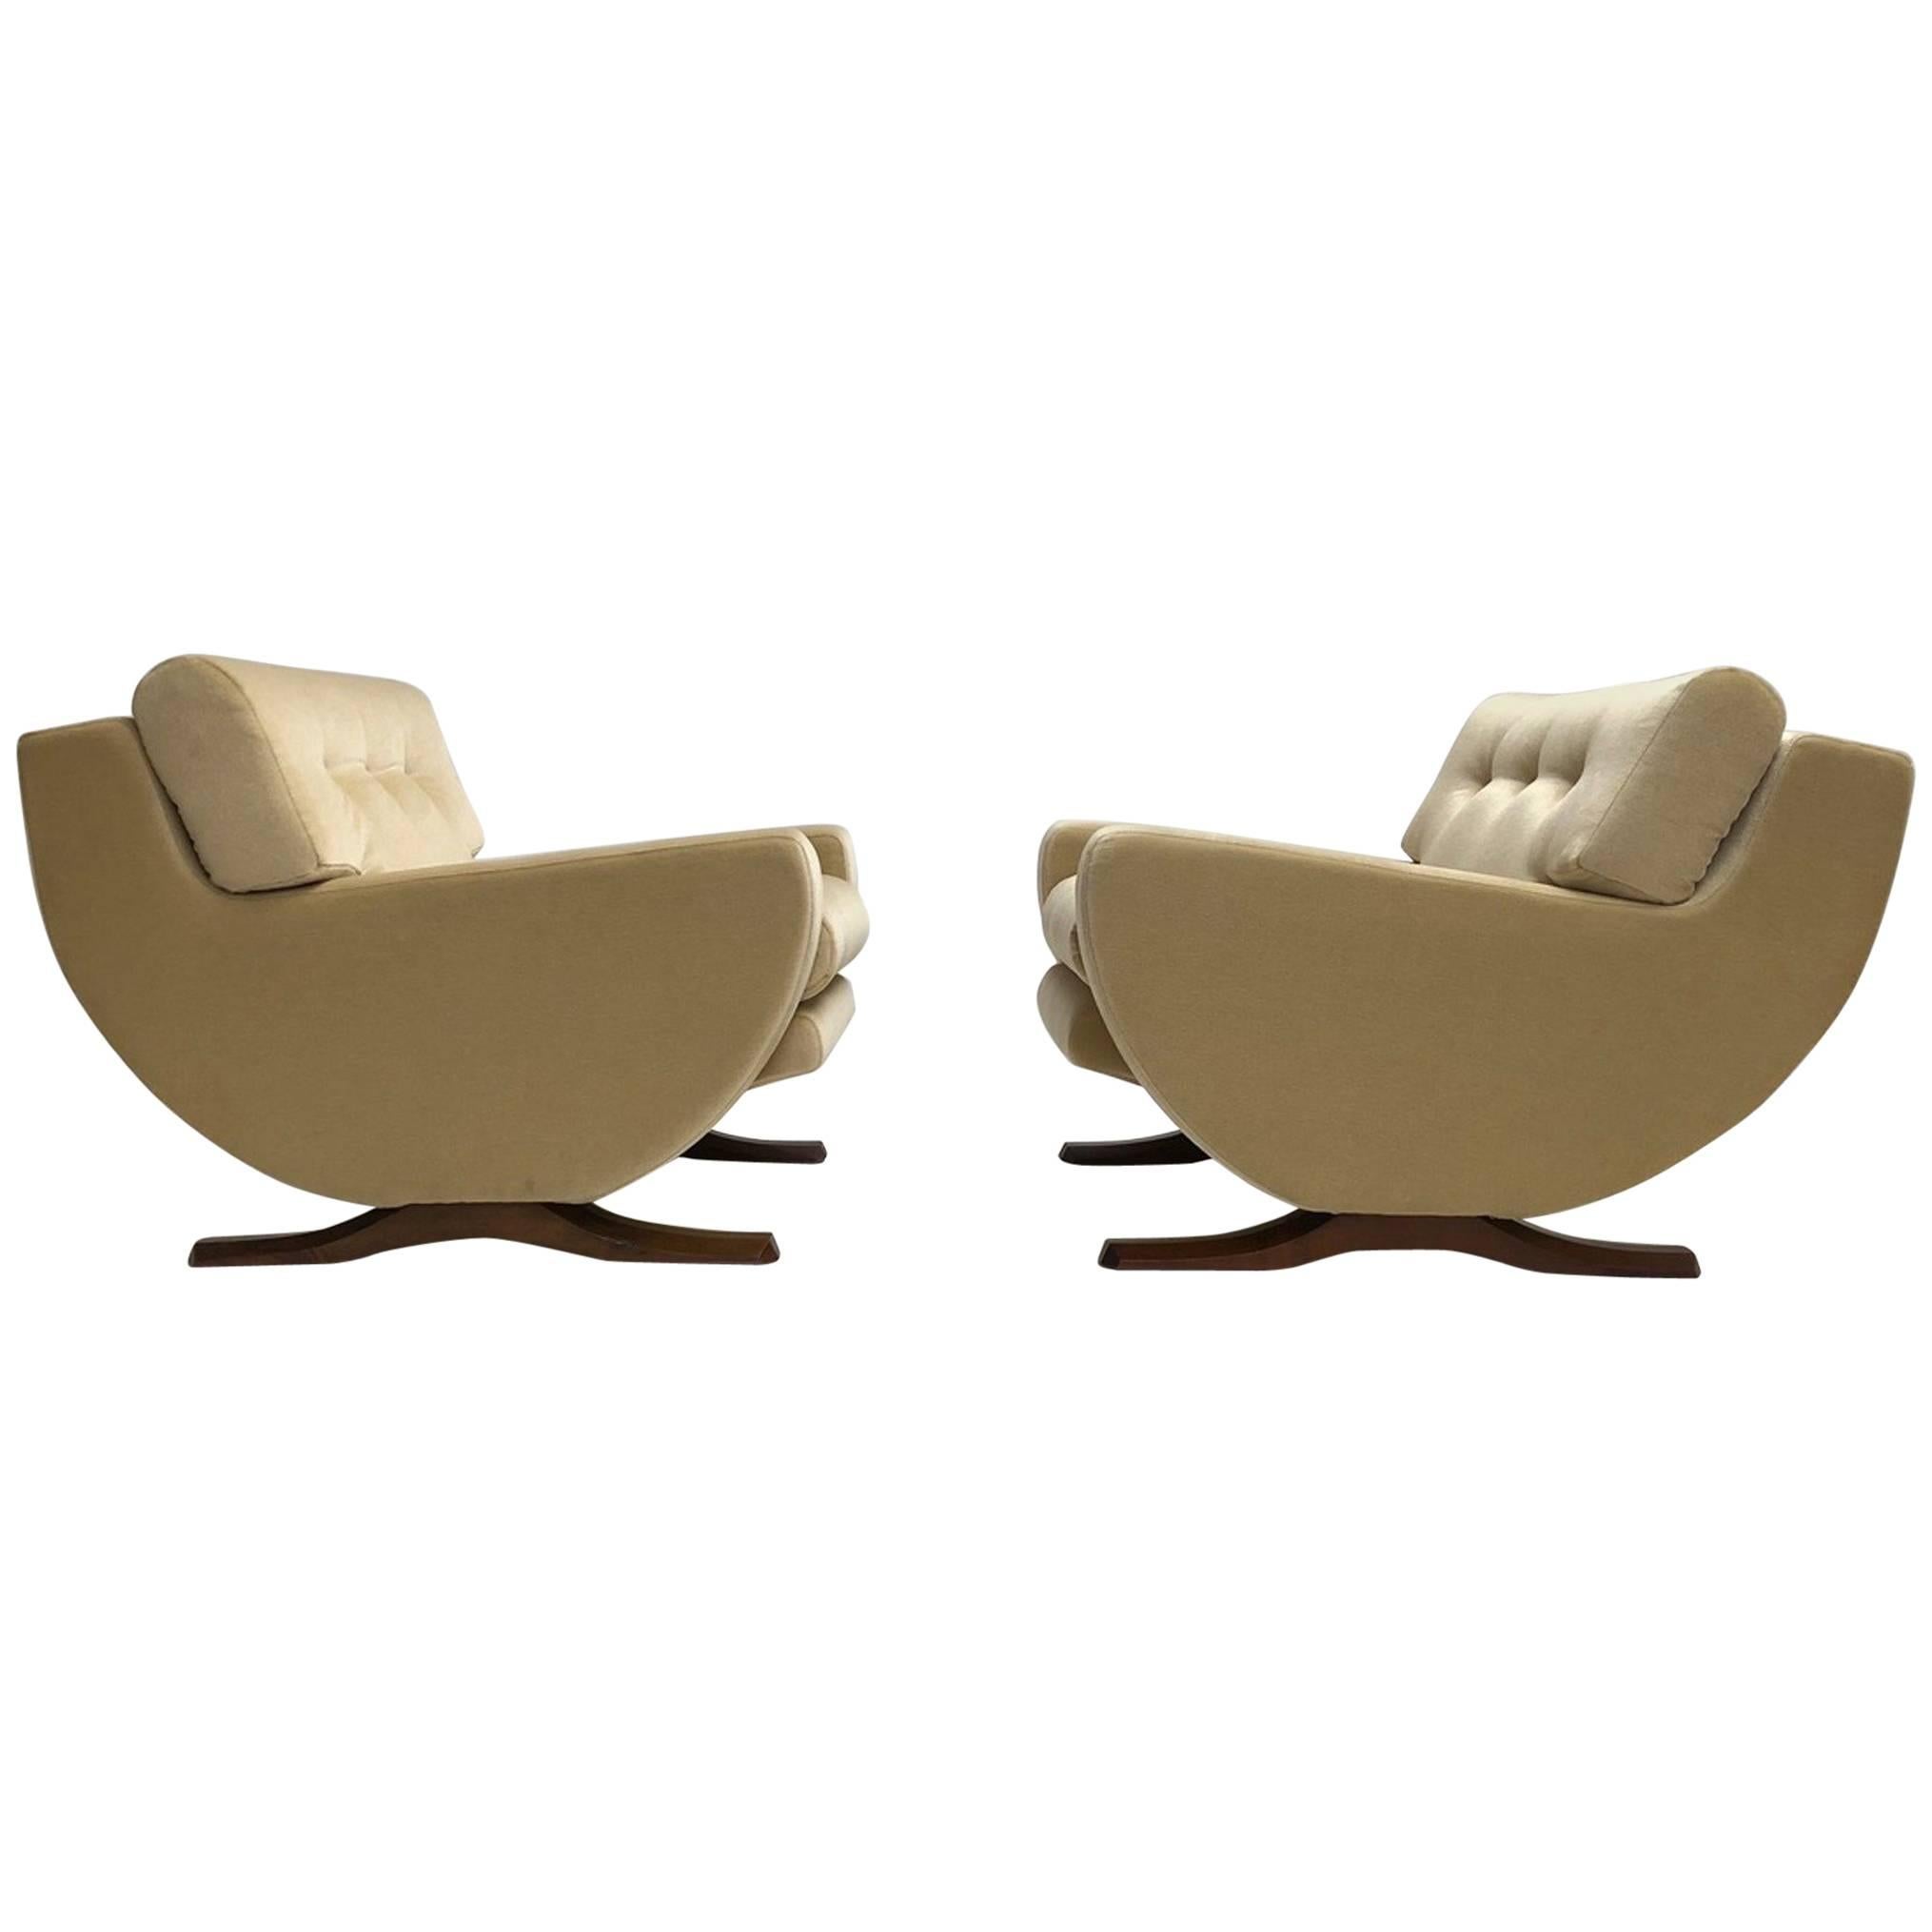 Rare Mohair Lounge Chairs by Italian Sculptor Franz T Sartori, Flexform, 1965